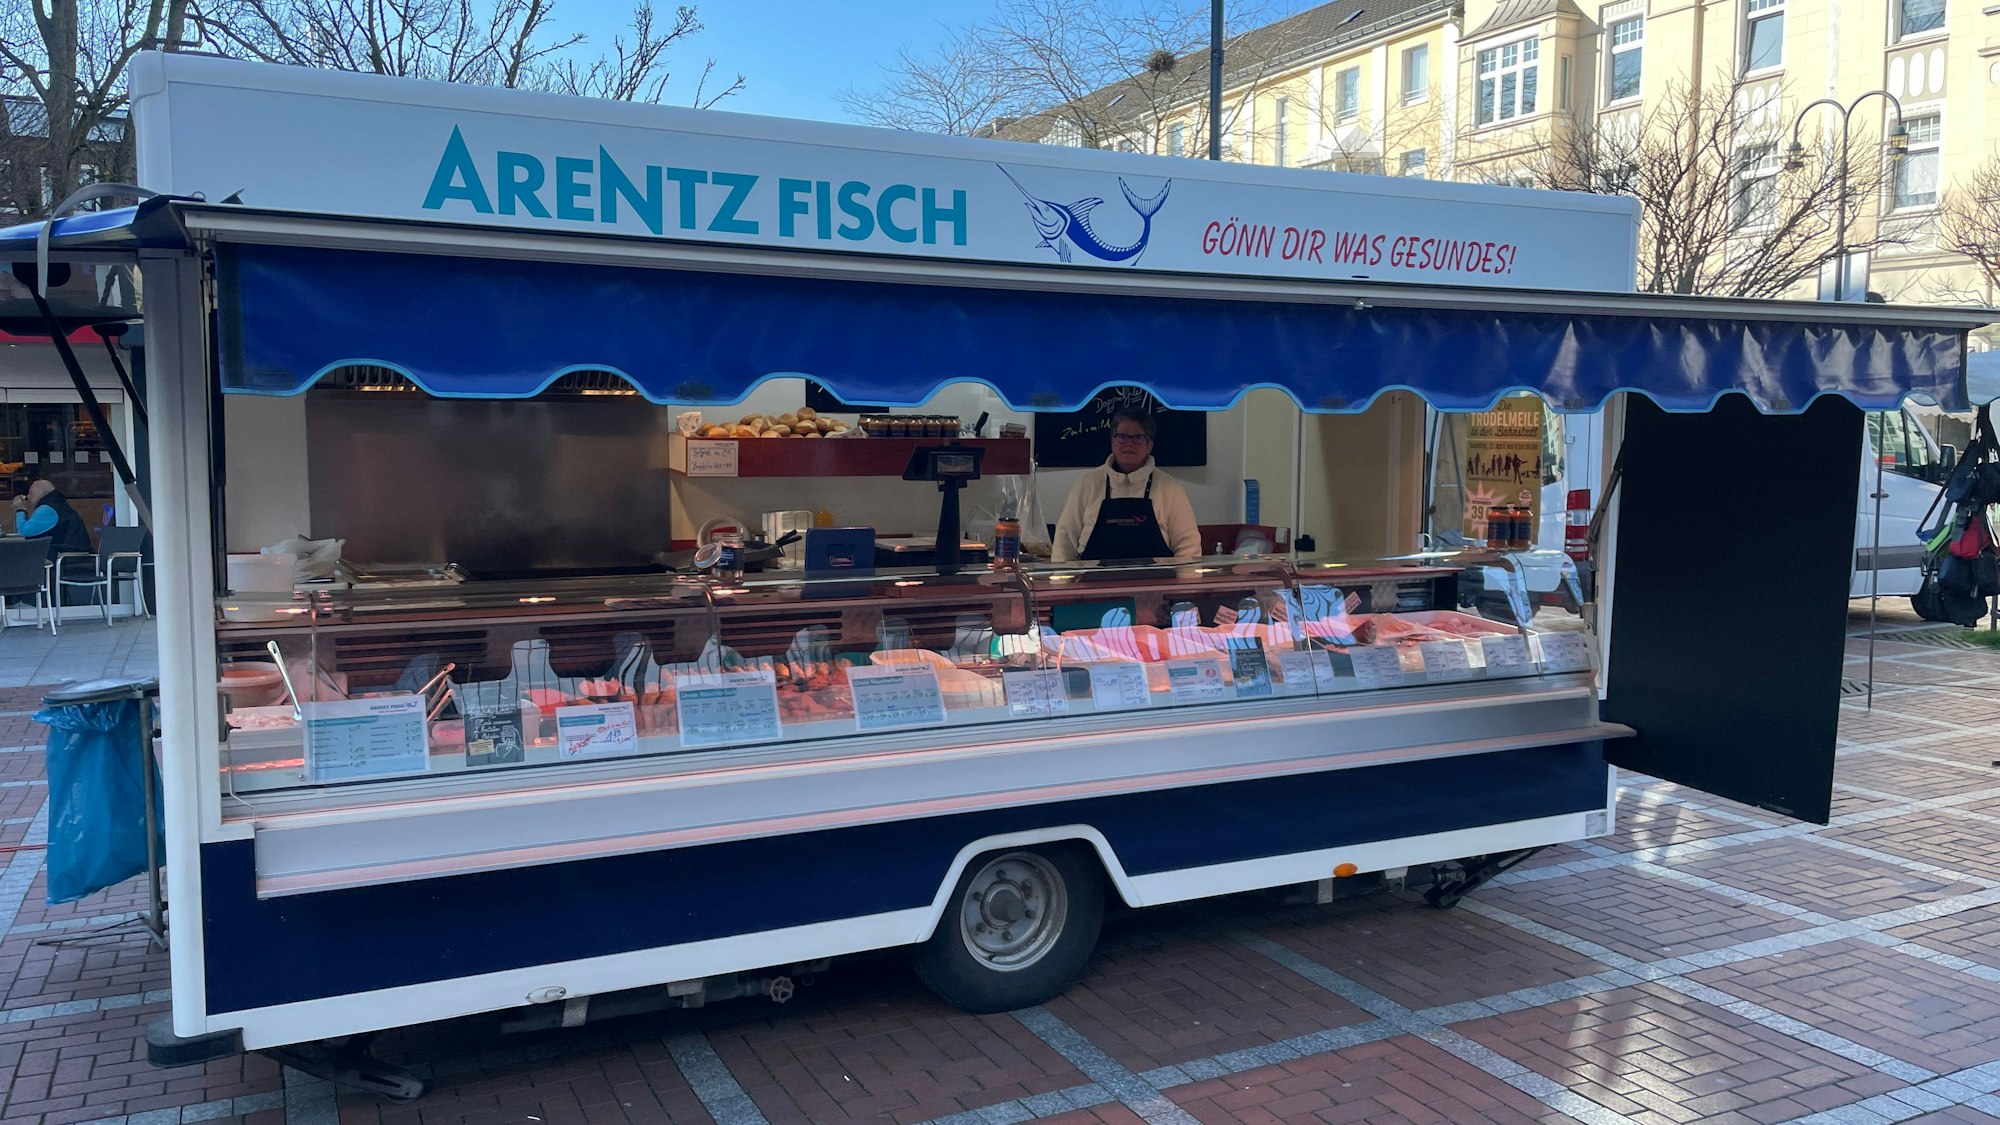 Der Stand von Arentz Fisch am Wiesdorfer Platz in Leverkusen. Zum Osterfest 2023 müssen sich Leverkusener auf höhere Fischpreise einstellen.